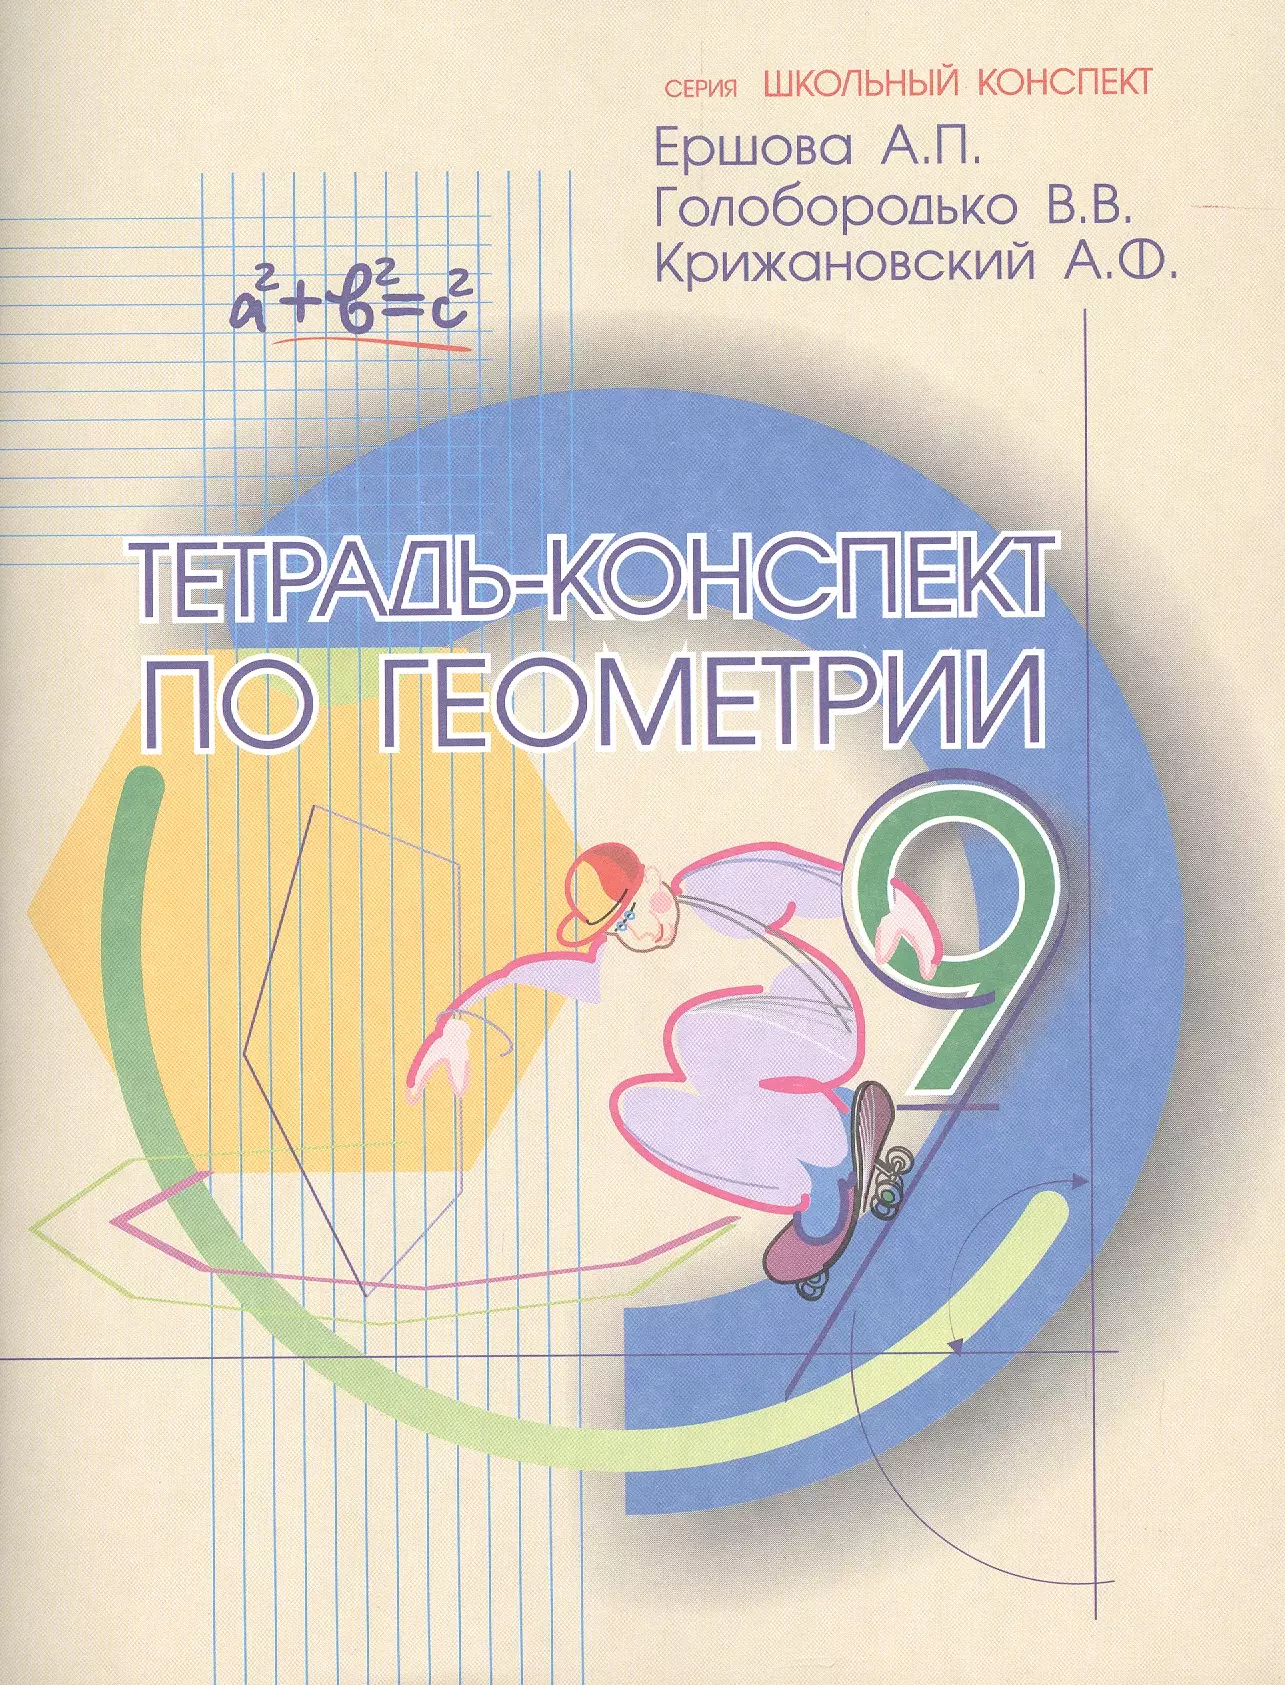 Ершова Алла Петровна - Тетрадь-конспект по геометрии 9 кл. (По Атанасяну).